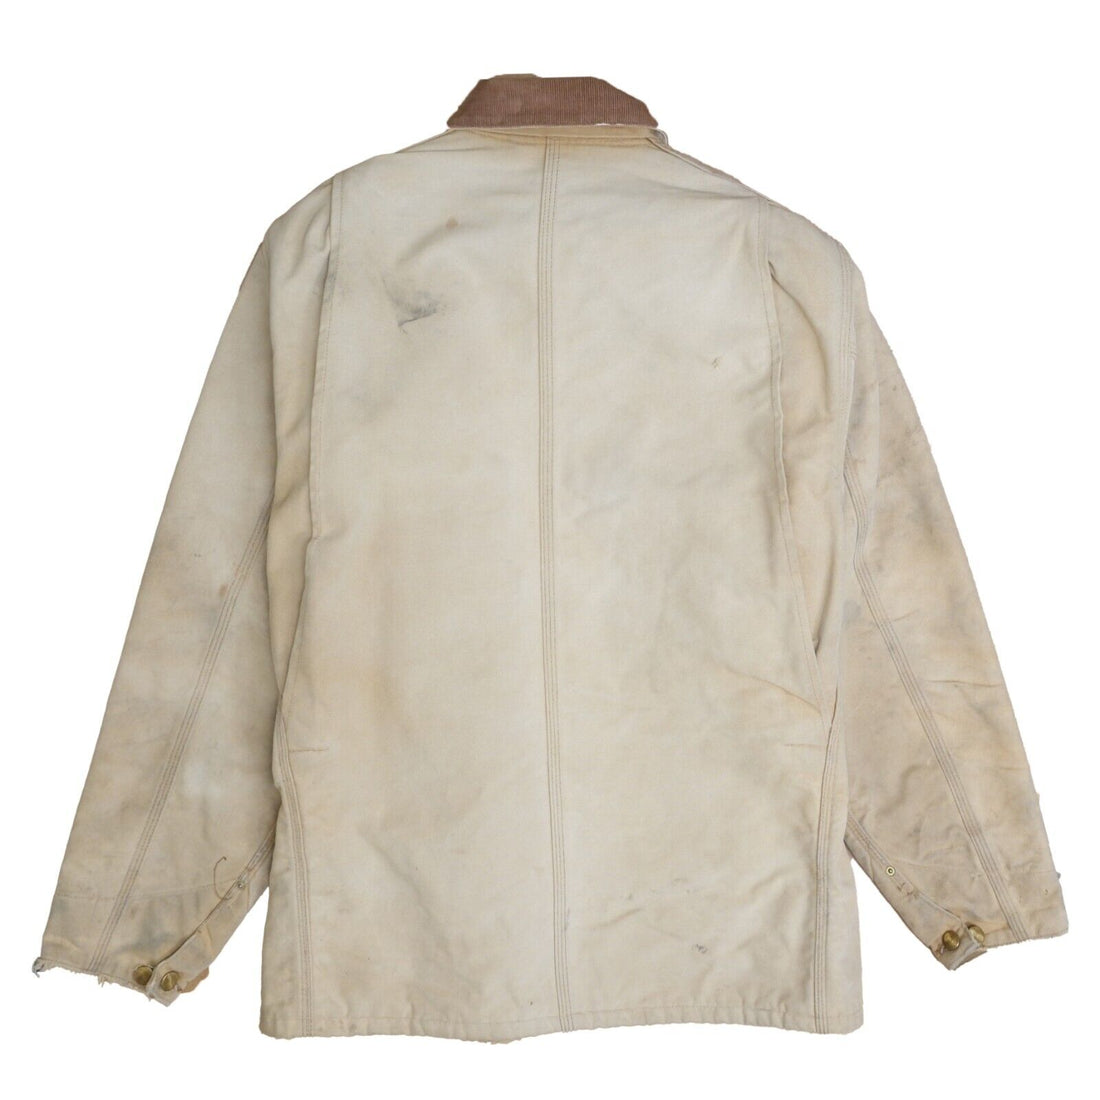 Vintage Carhartt Canvas Chore Work Jacket Size Large Khaki Blanket Lined